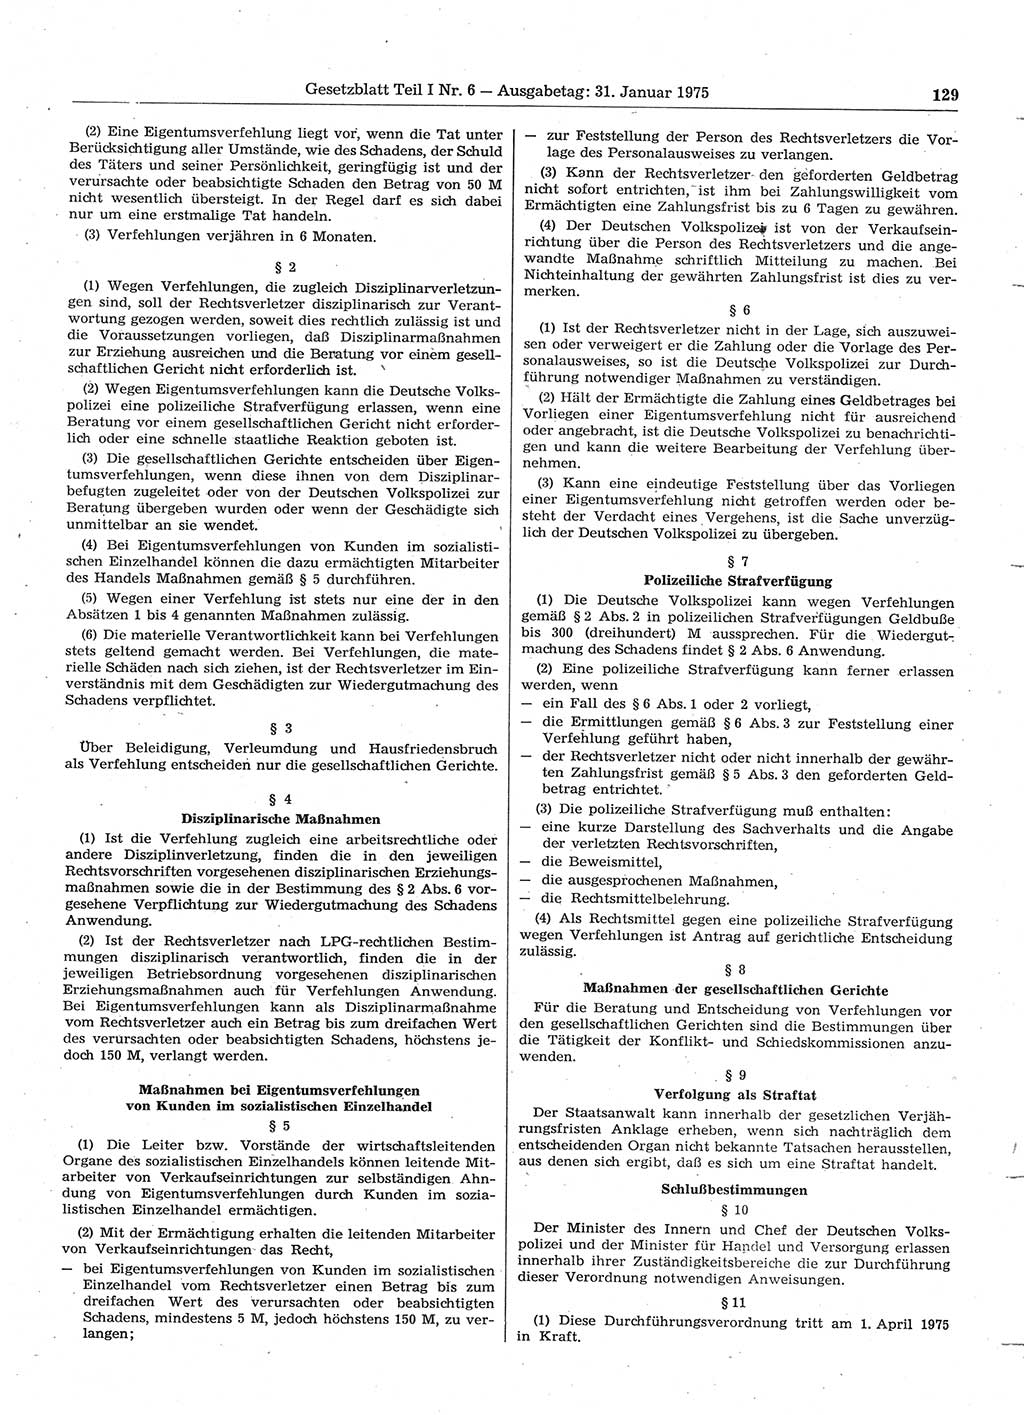 Gesetzblatt (GBl.) der Deutschen Demokratischen Republik (DDR) Teil Ⅰ 1975, Seite 129 (GBl. DDR Ⅰ 1975, S. 129)